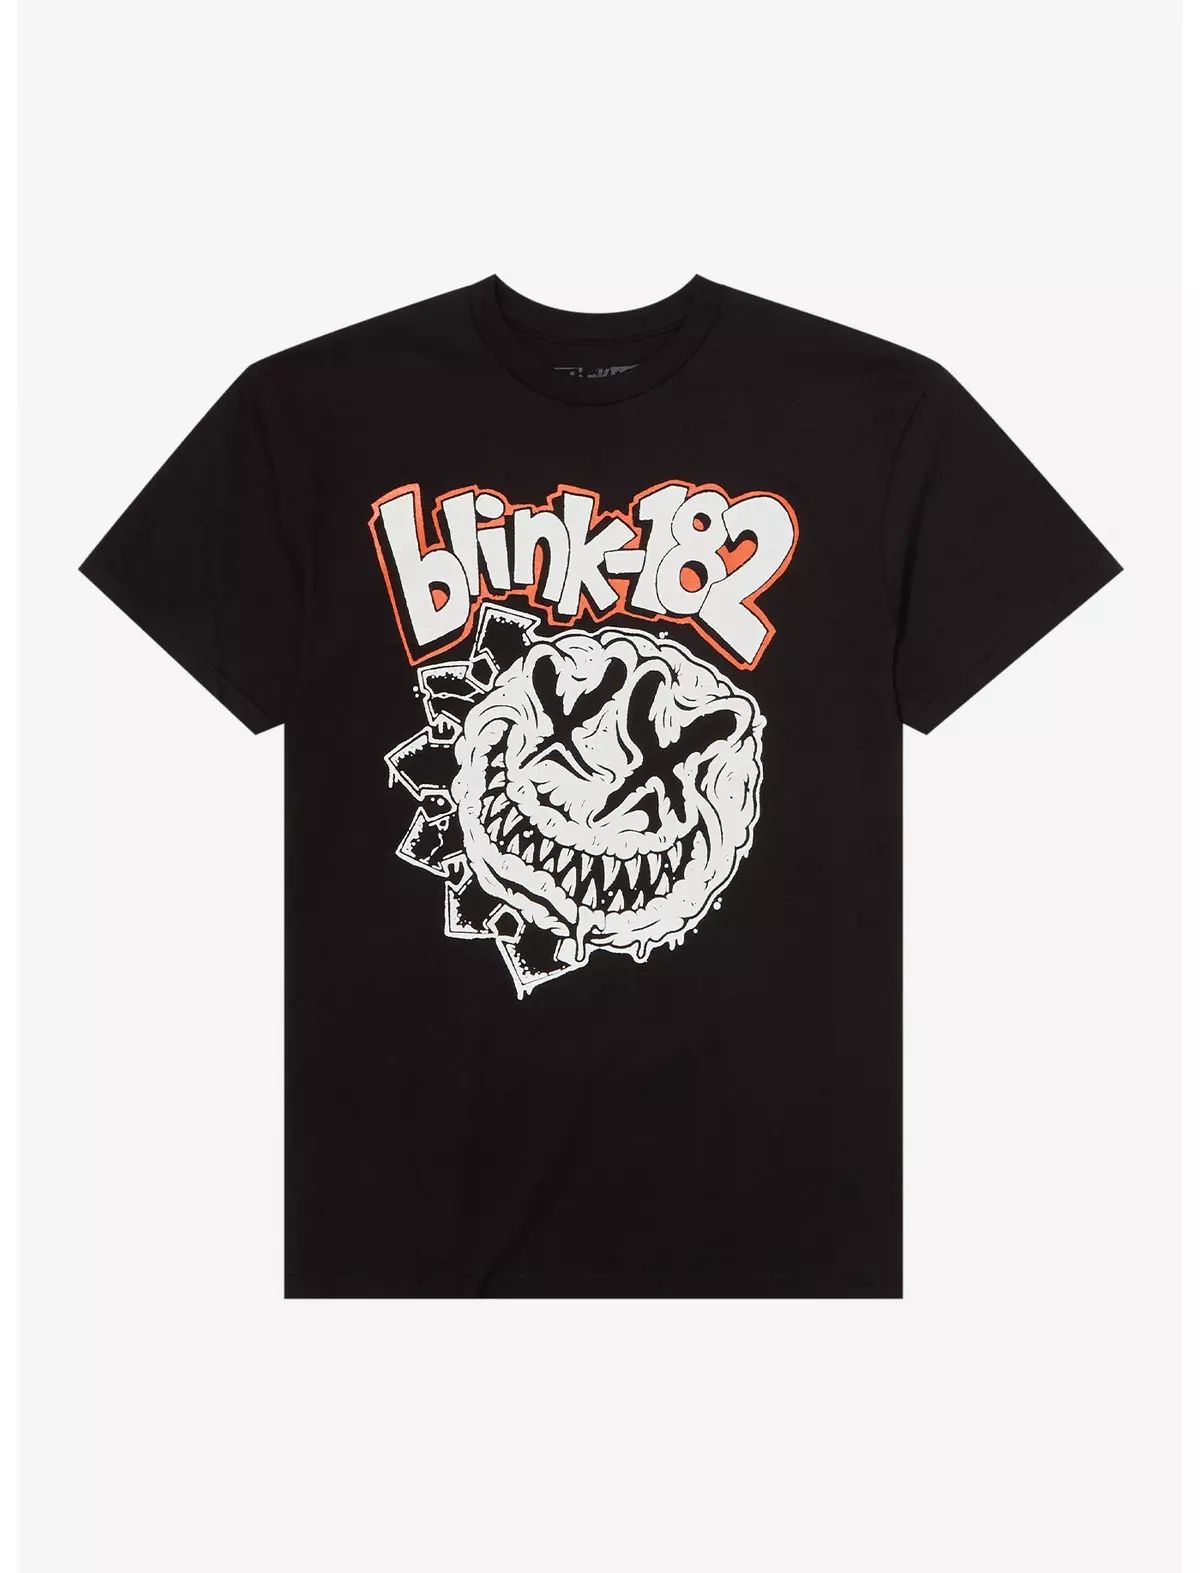 Blink-182 2023 World Tour T-Shirt | Hot Topic